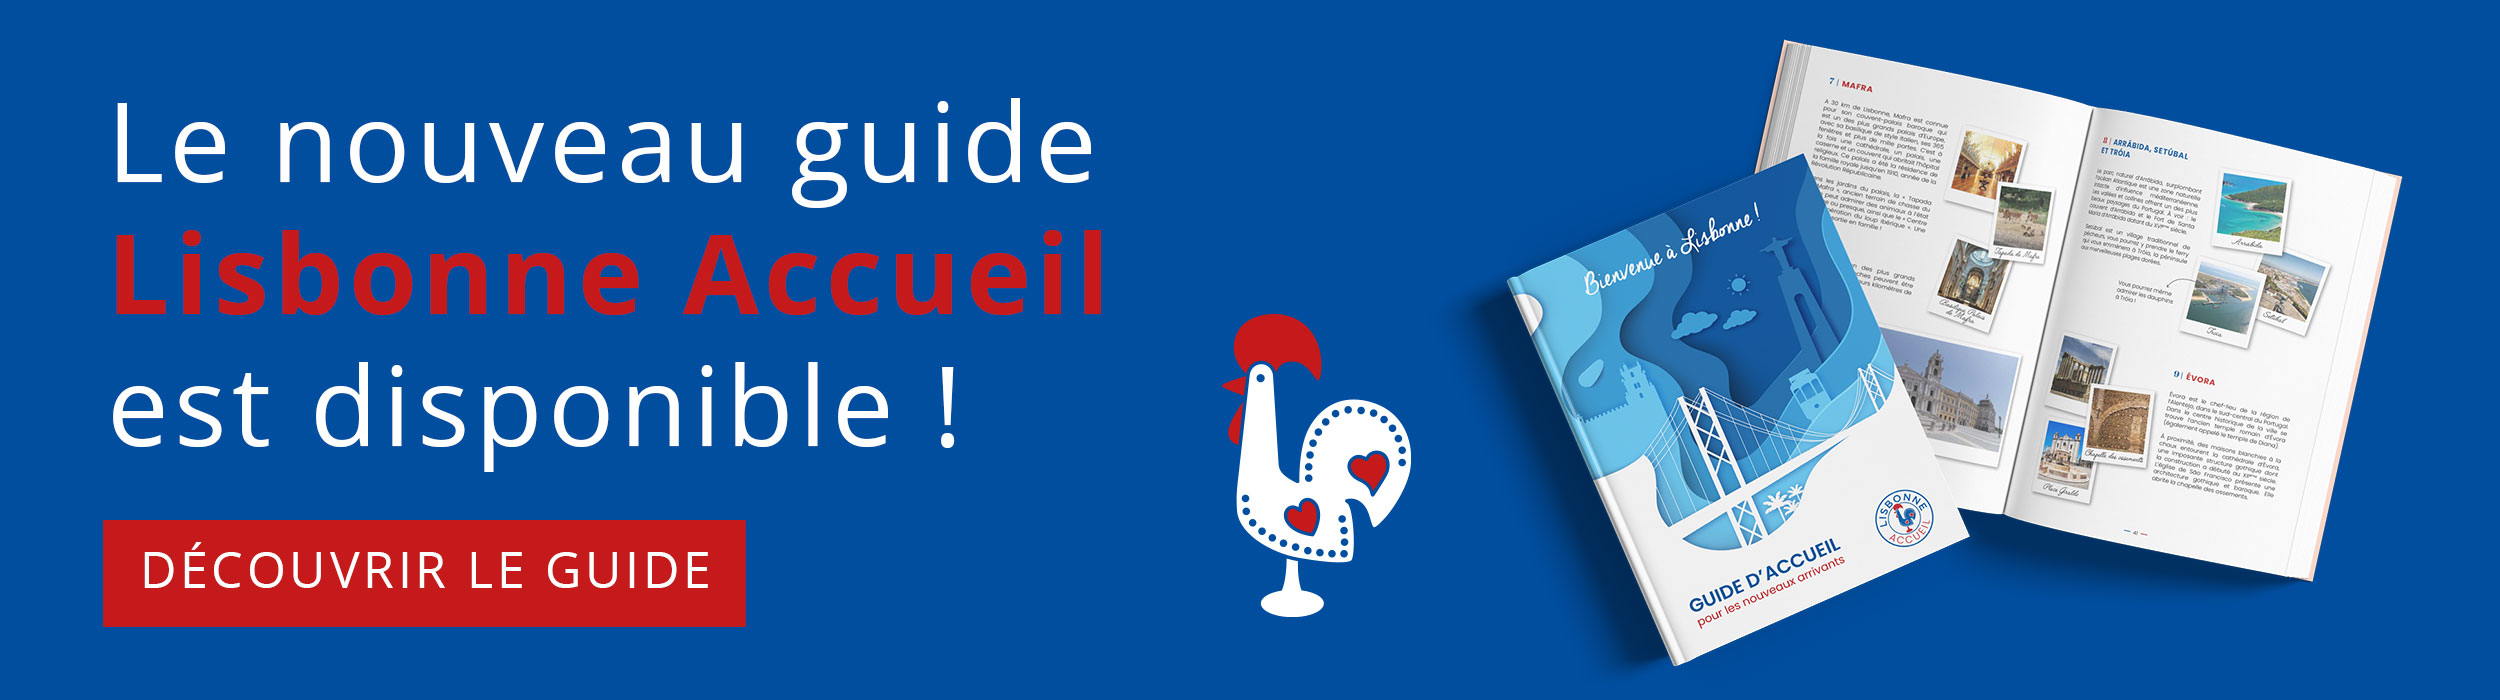 Le nouveau guide Lisbonne Accueil est disponible !